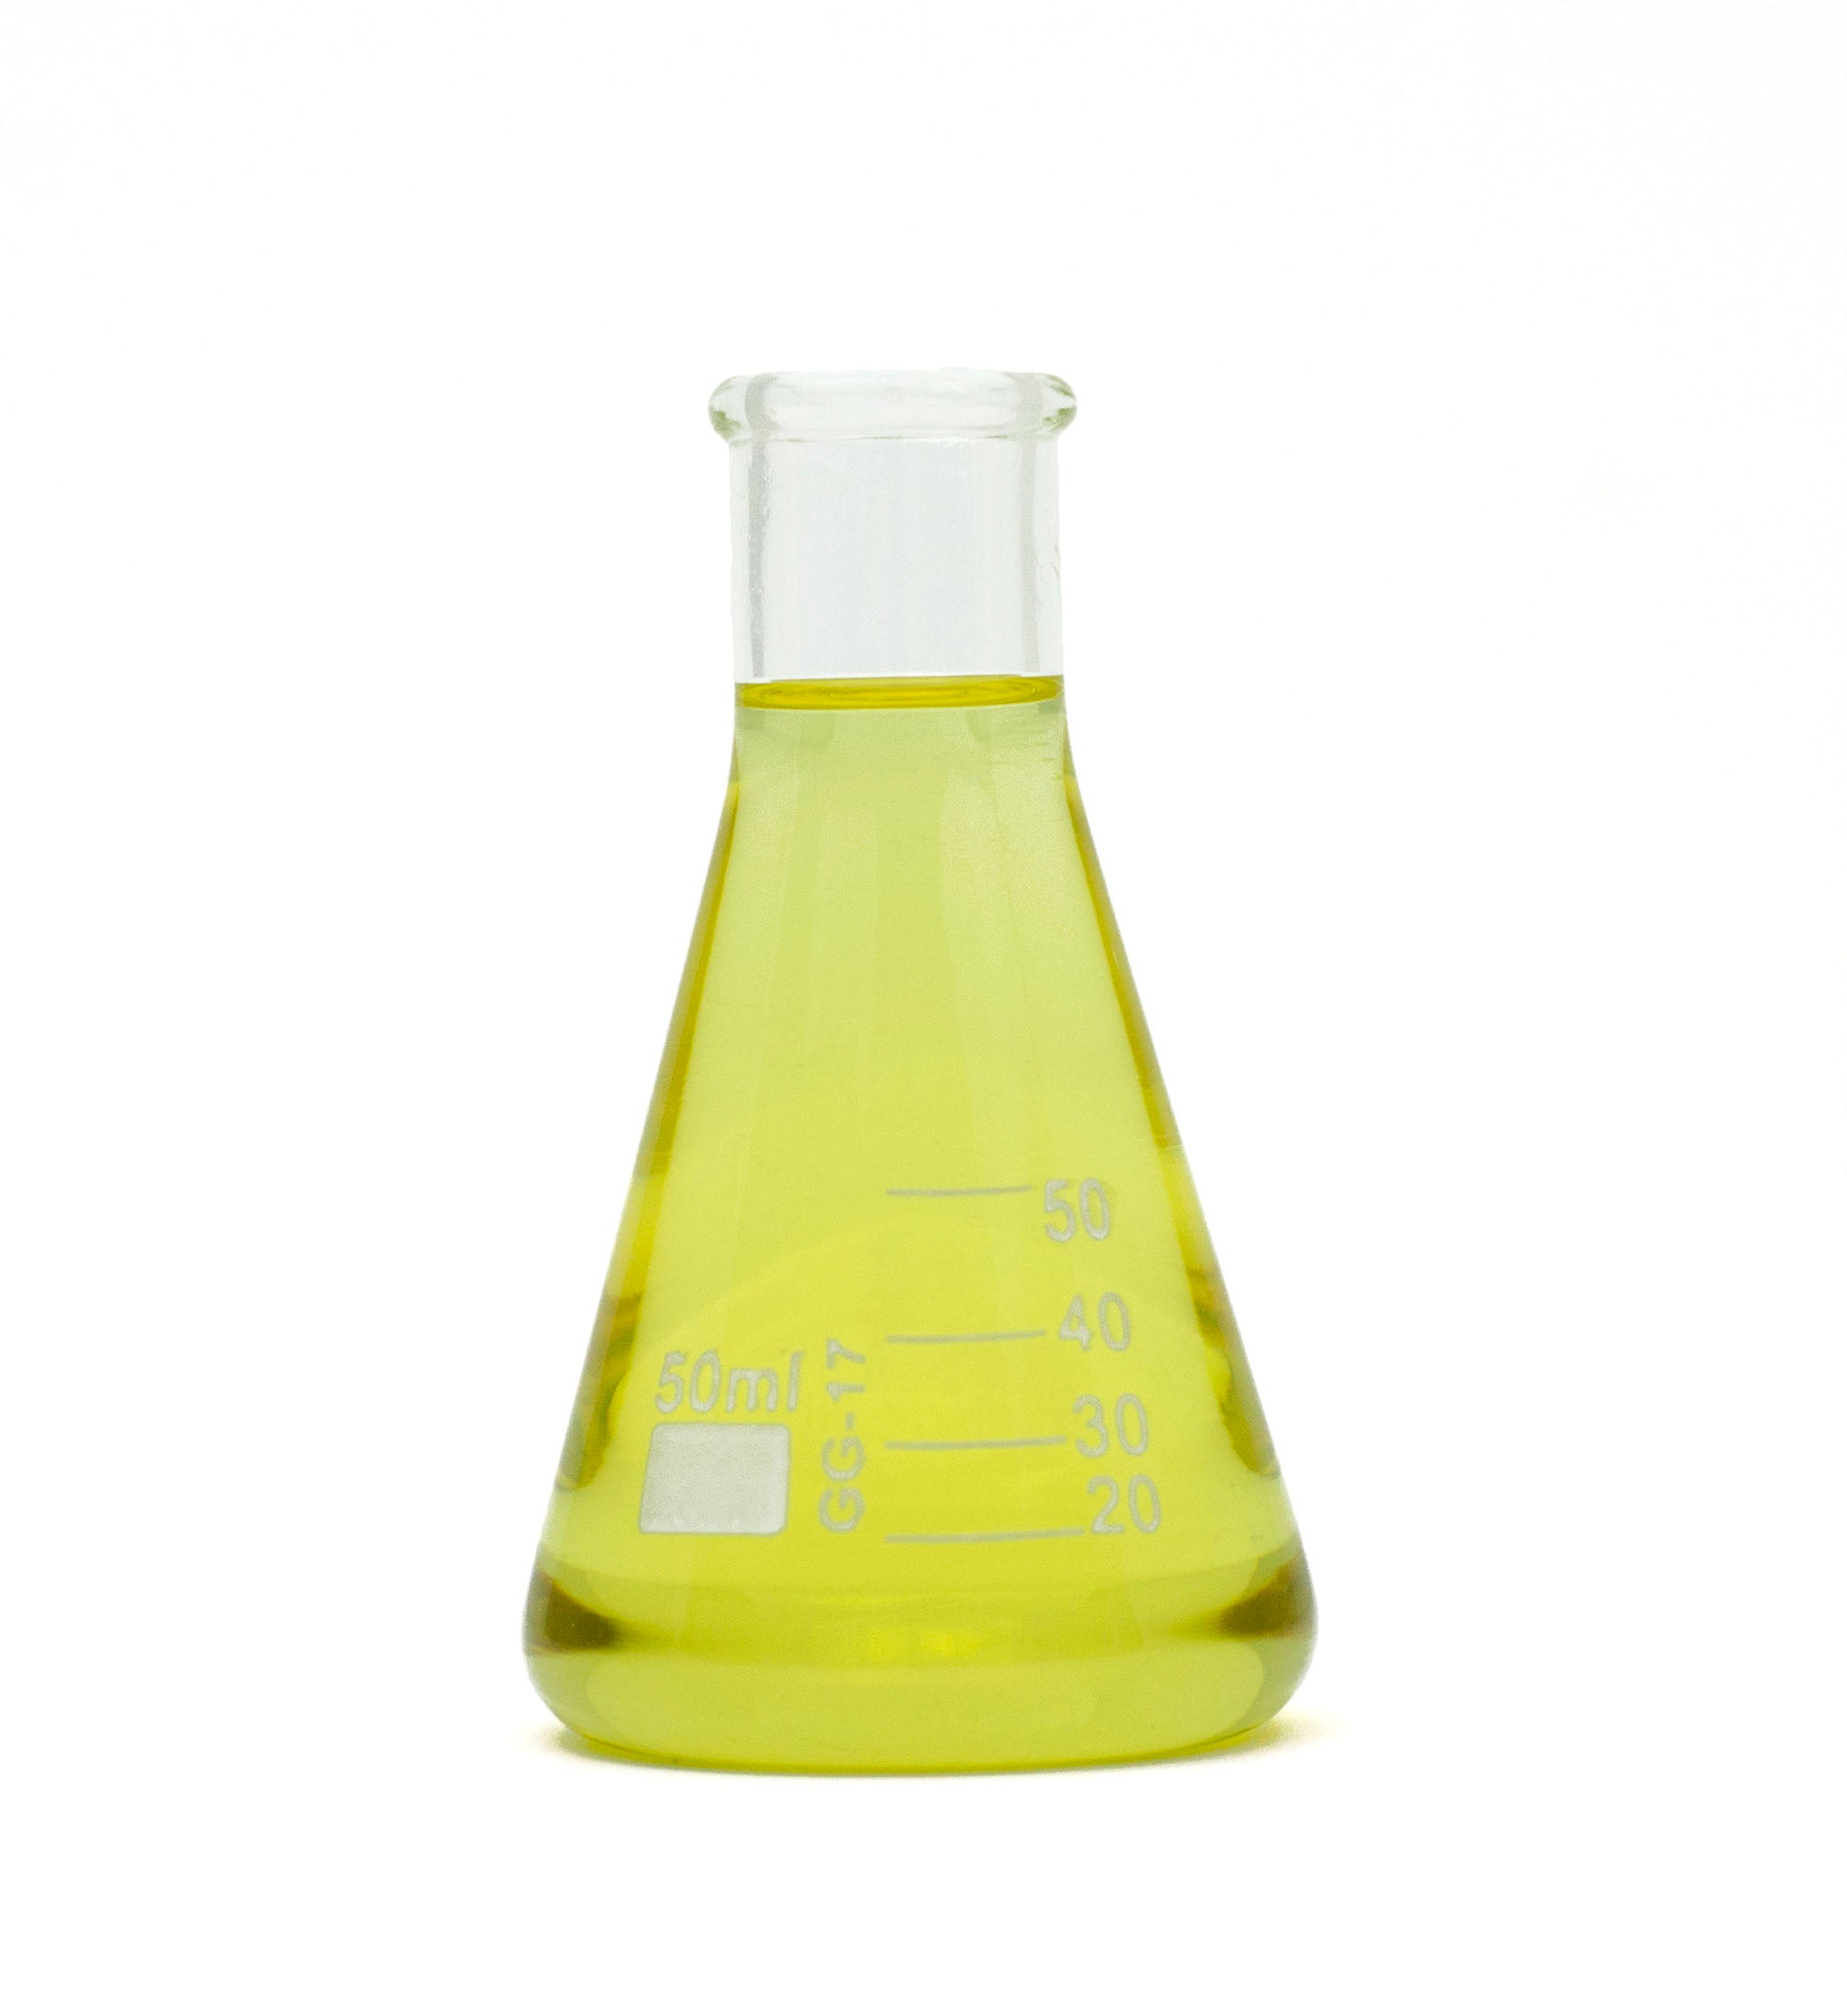 Cedarwood essential oil in beaker